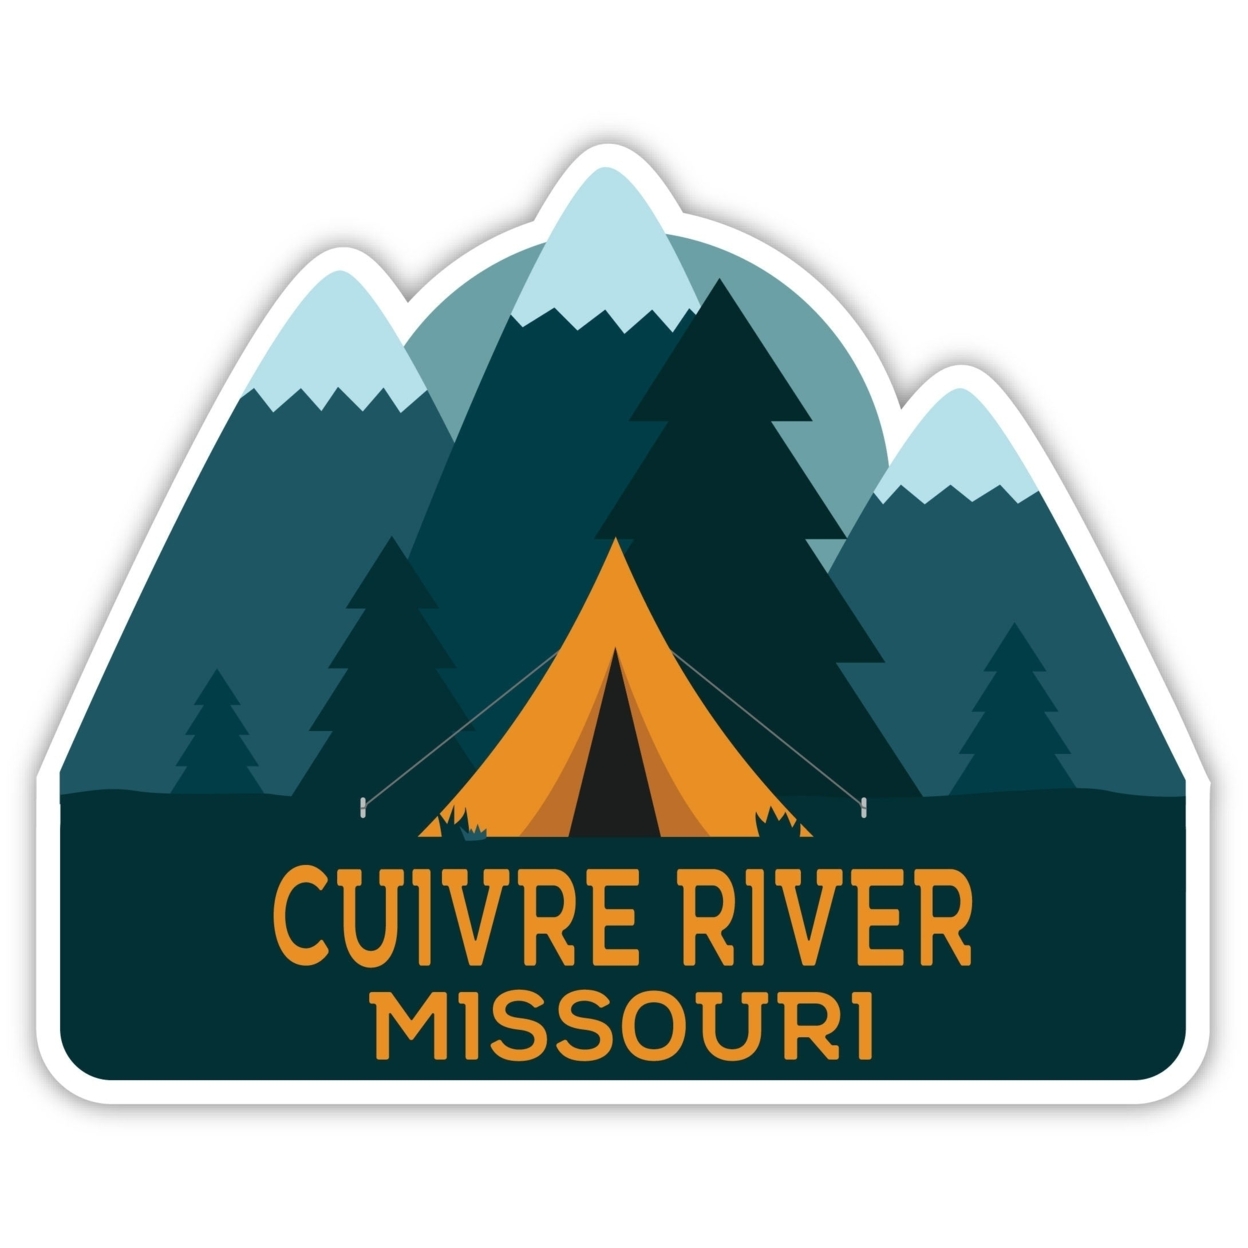 Cuivre River Missouri Souvenir Decorative Stickers (Choose Theme And Size) - Single Unit, 6-Inch, Tent